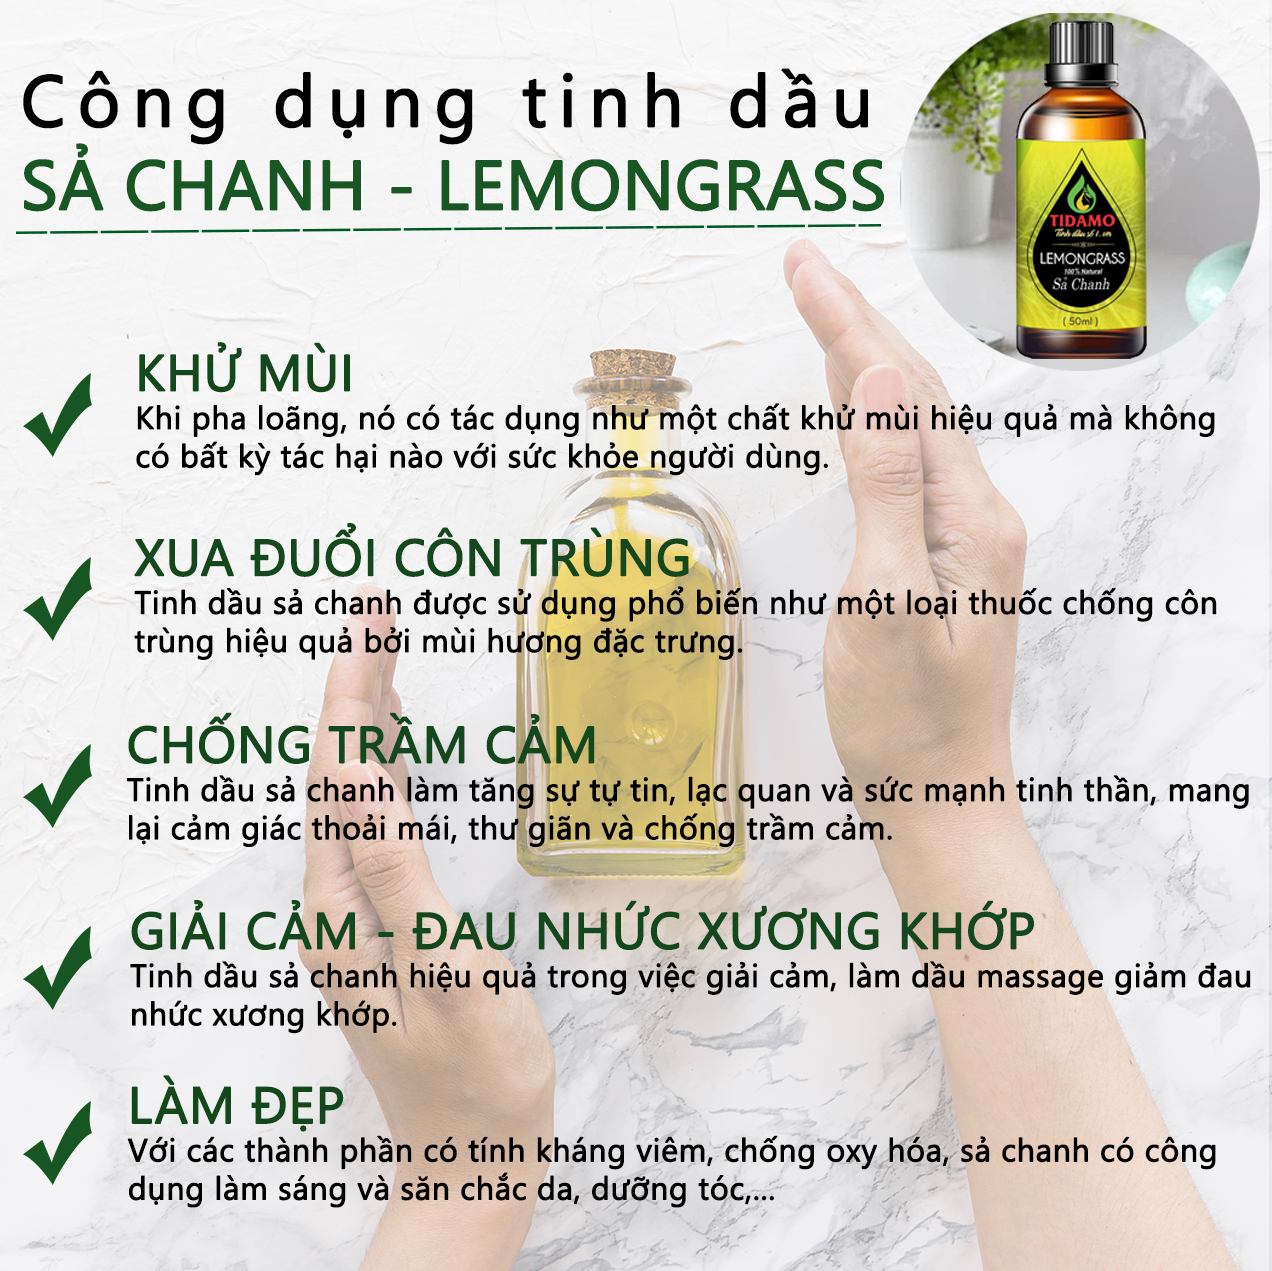 Tinh dầu Sả Chanh Thiên Nhiên Cao Cấp 50ML (Lemongrass) - Tinh dầu Sả Chanh Nguyên Chất TIDAMO Giúp Bảo Vệ Sức Khỏe, Kháng Khuẩn, Đuổi Muỗi Và Thư Giãn Tinh Thần